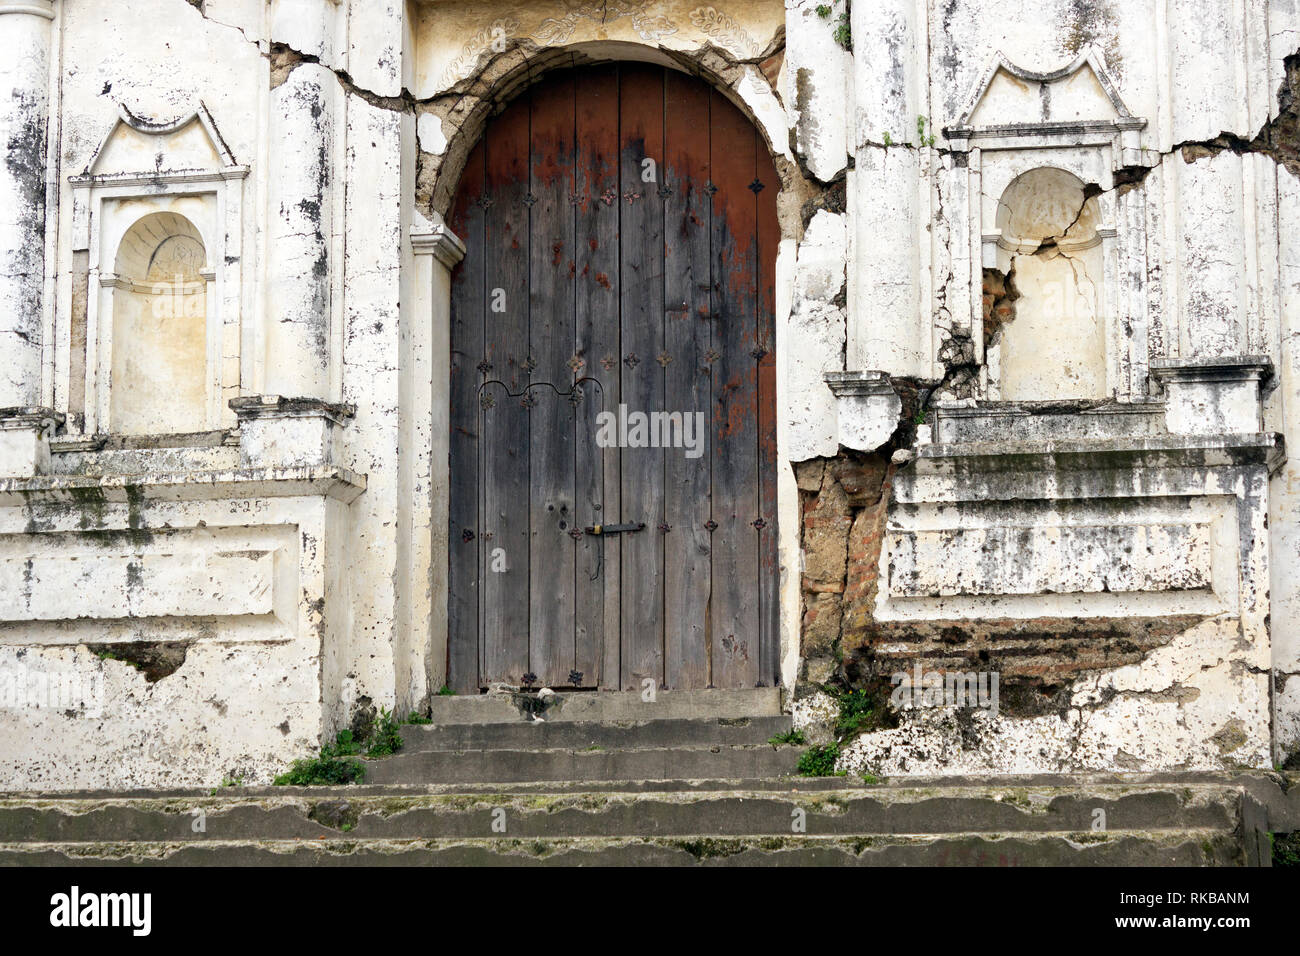 Iglesia de Ruinas muy Antigua, con Puerta Al Frente desteñida, localizada Muy cerca de Antigua Guatemala, ciudad Colonial de Mucha importancia Stockfoto